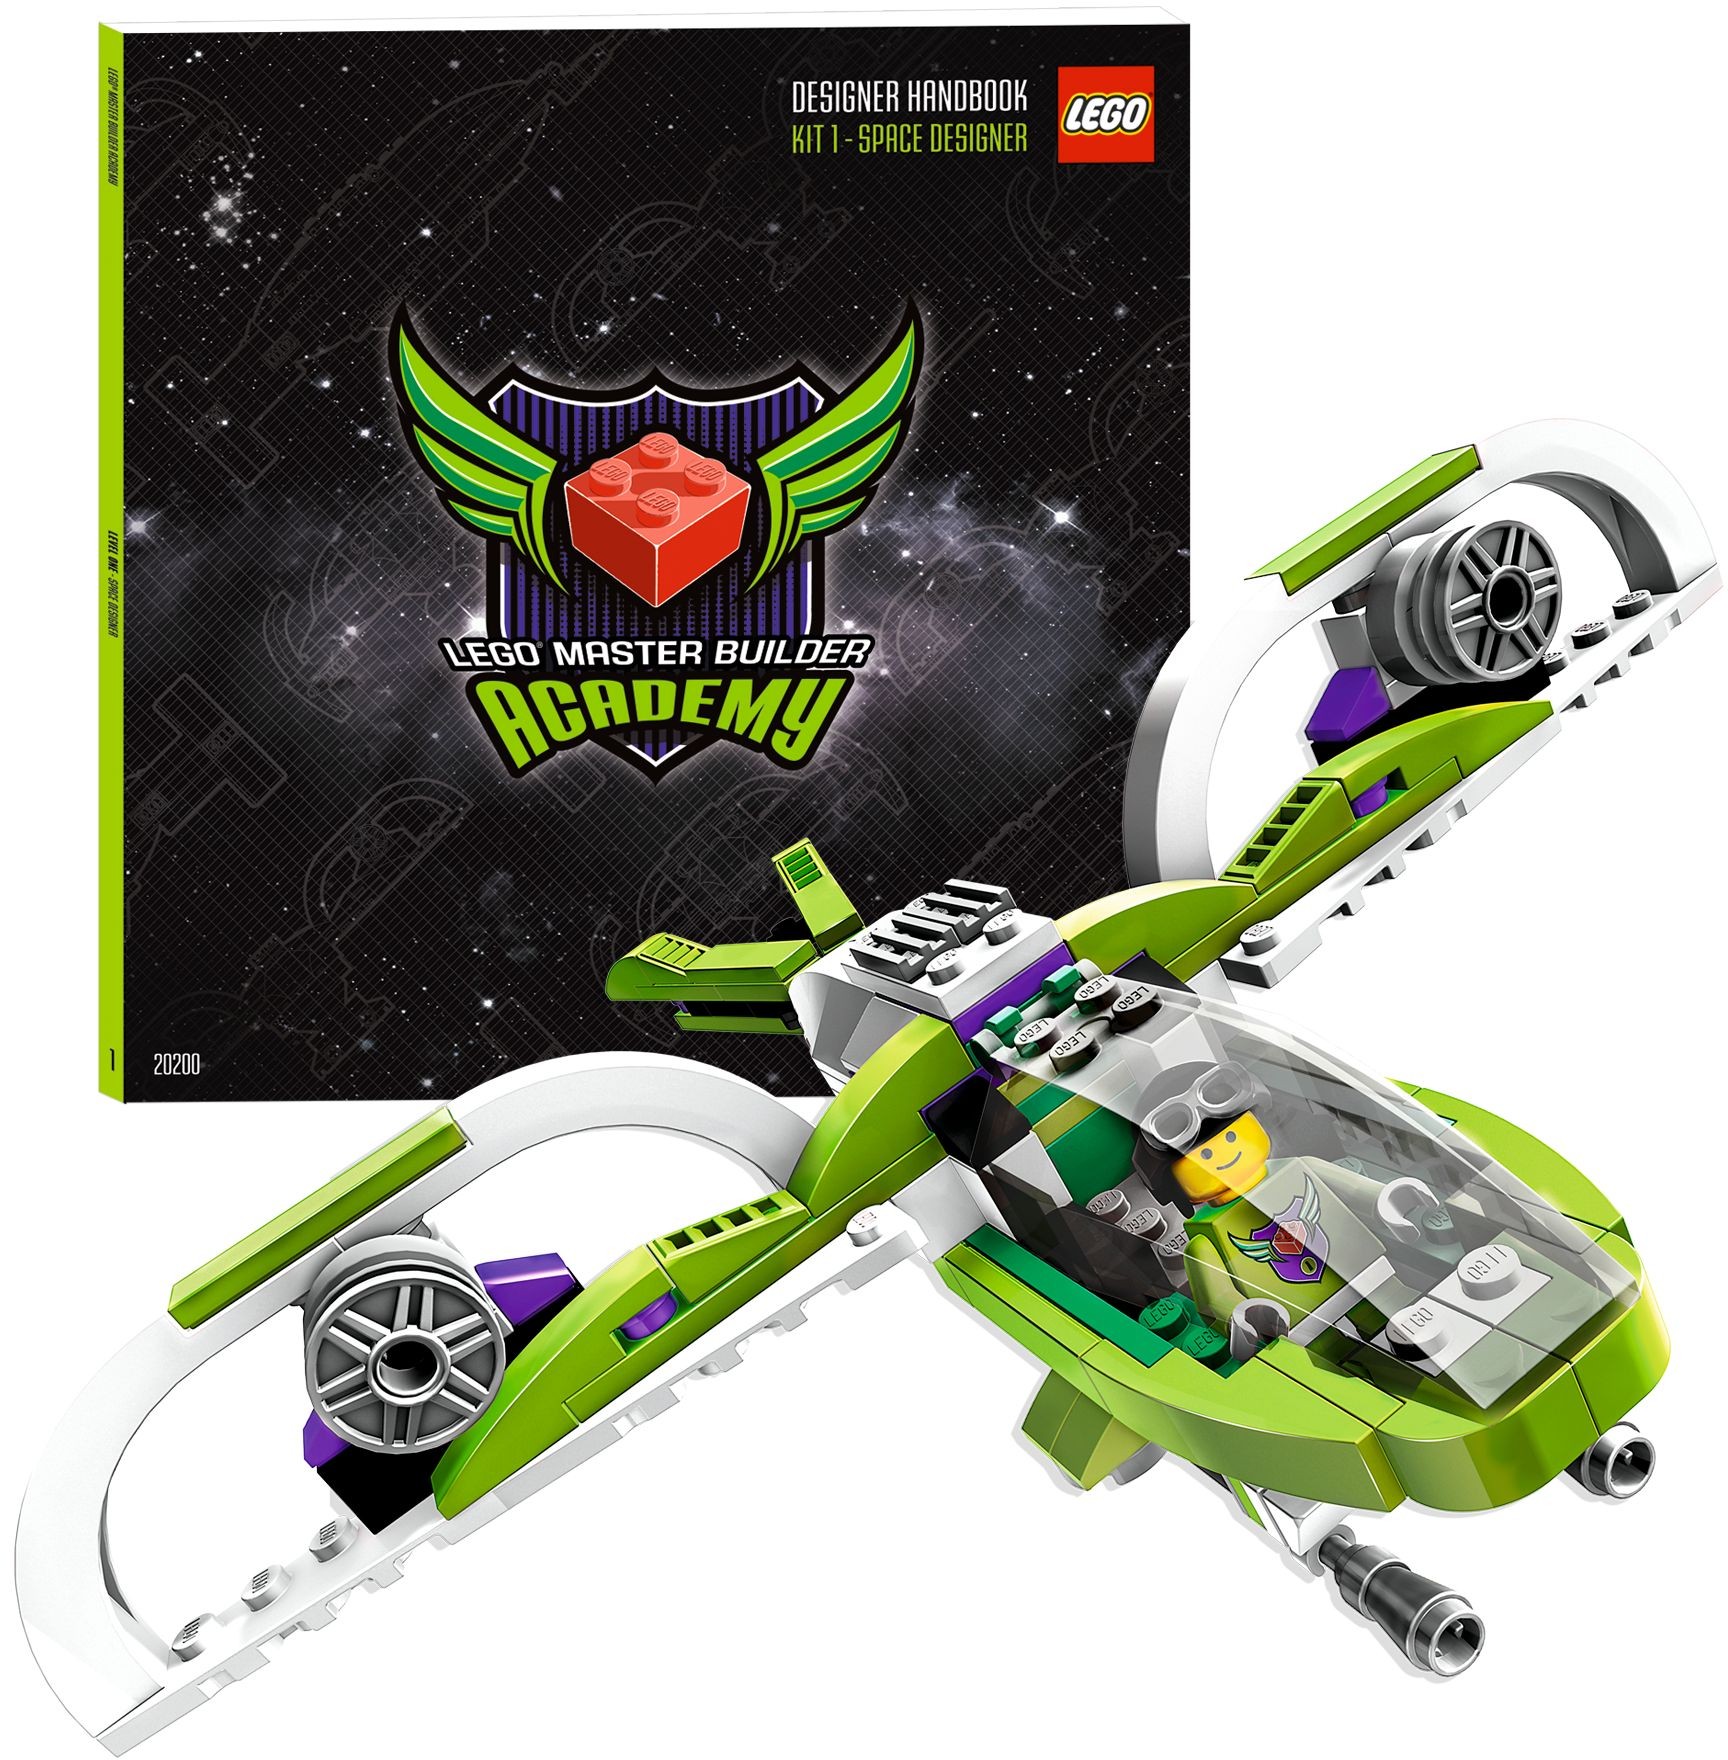 Space Designer (LEGO MBA Kit 1) 20200 | Lego Wiki | FANDOM powered by Wikia